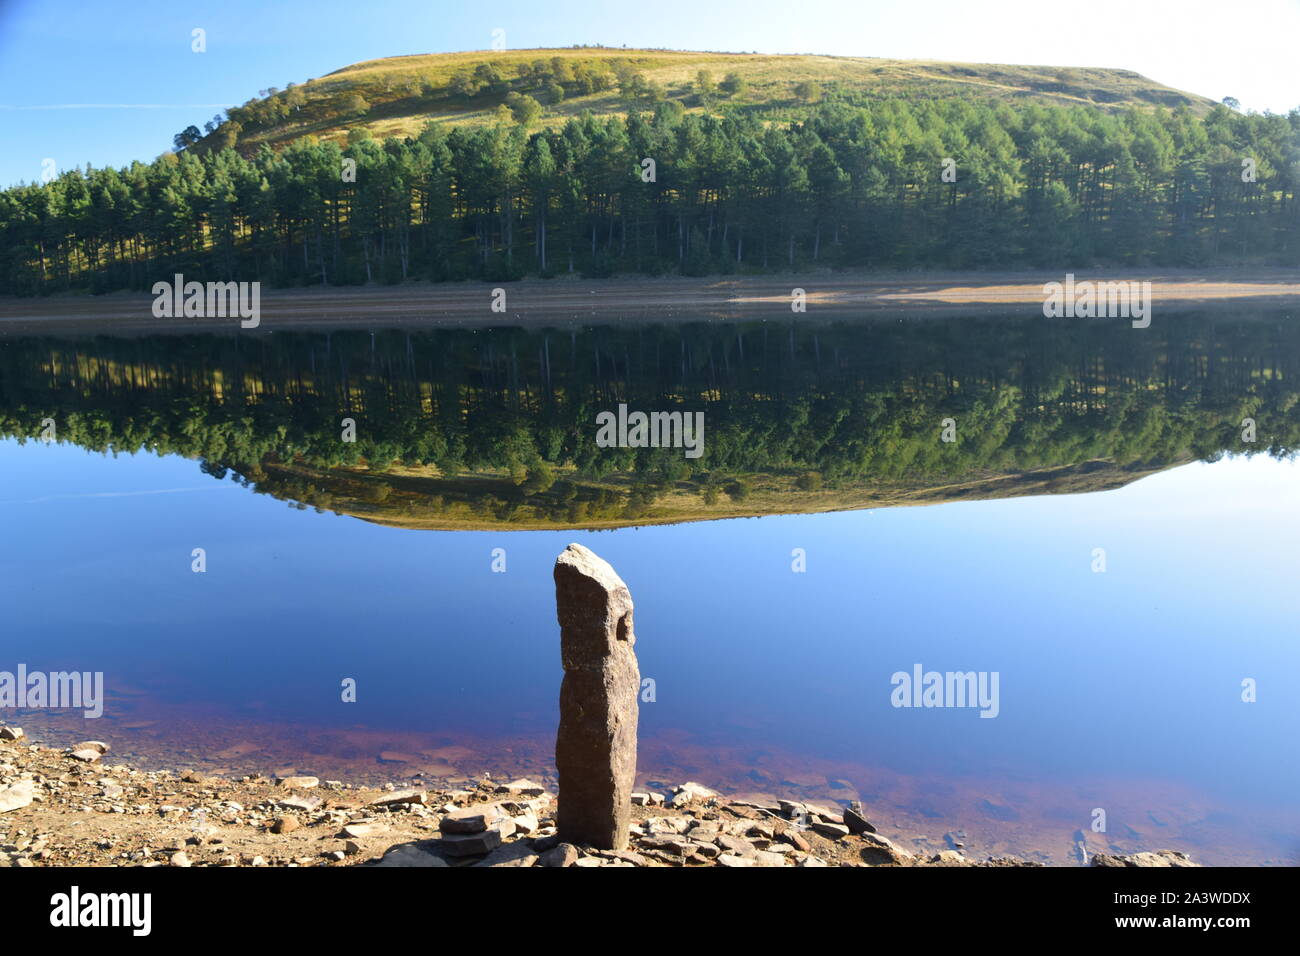 Howden Reservoir Derbyshire, a metà estate che mostra specchio come superficie d'acqua con incredibili riflessi della riva opposta. Foto Stock